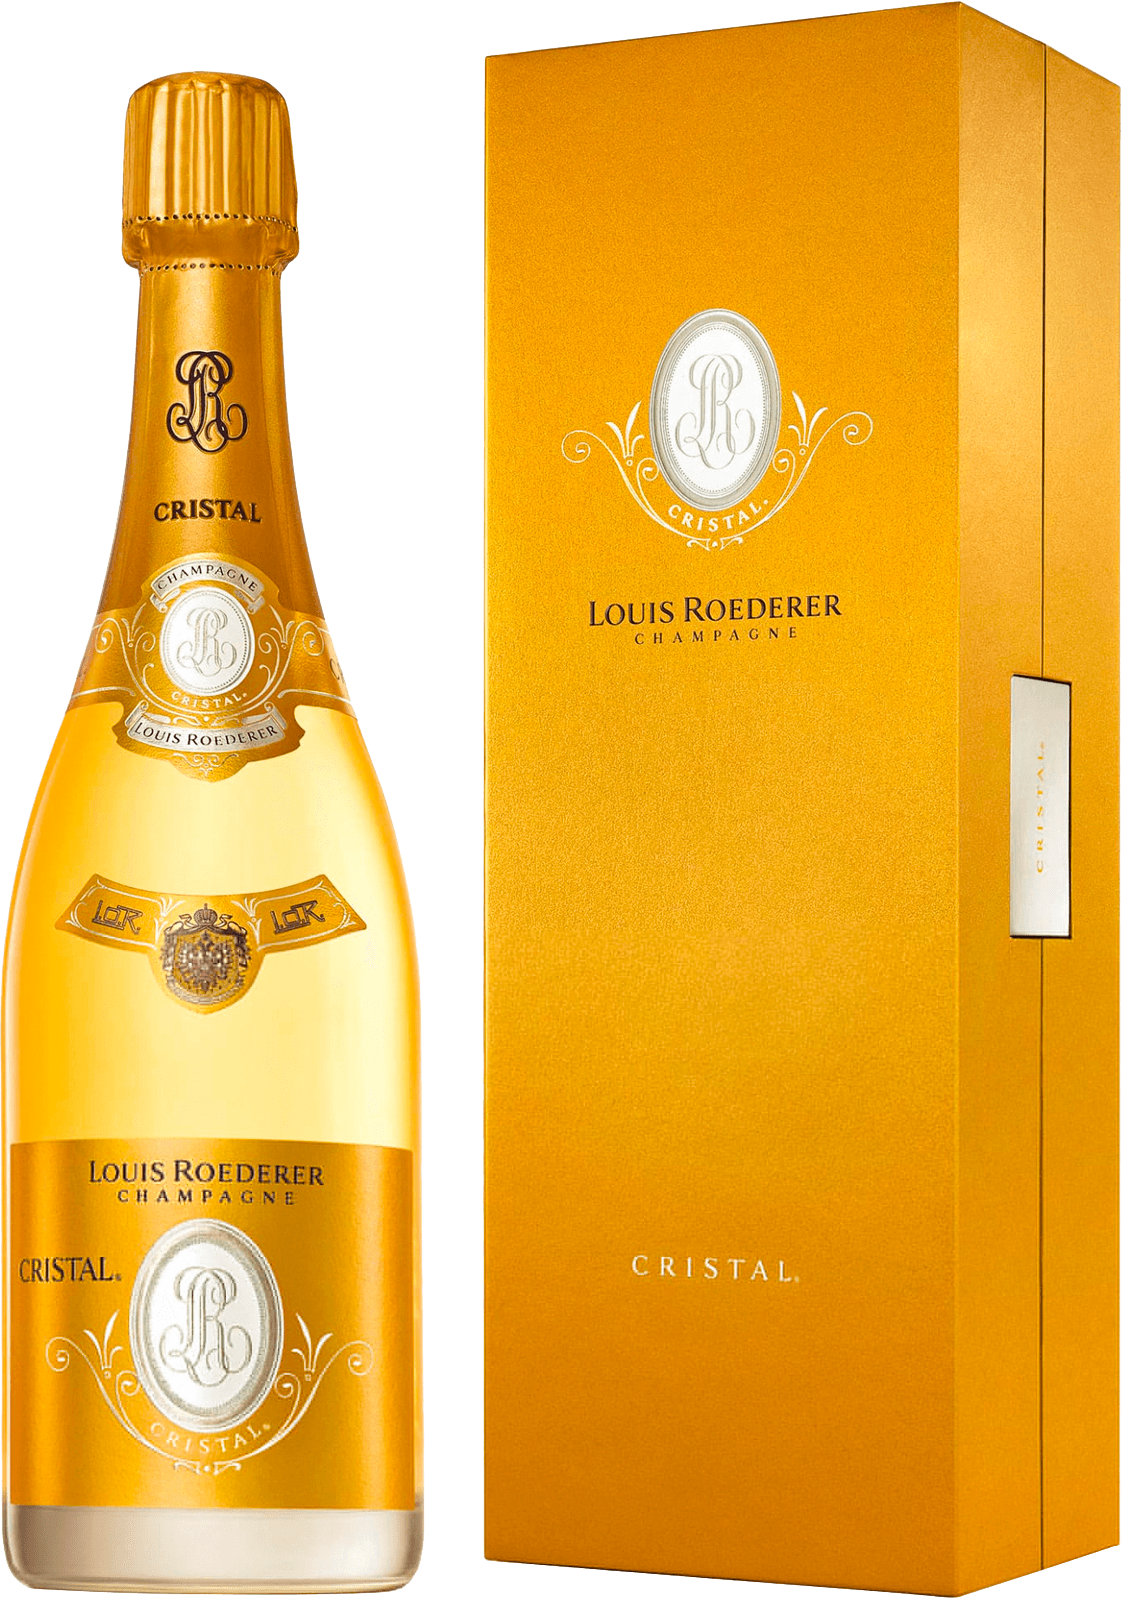 Cristal roederer en coffret 2012  Roederer, Champagne